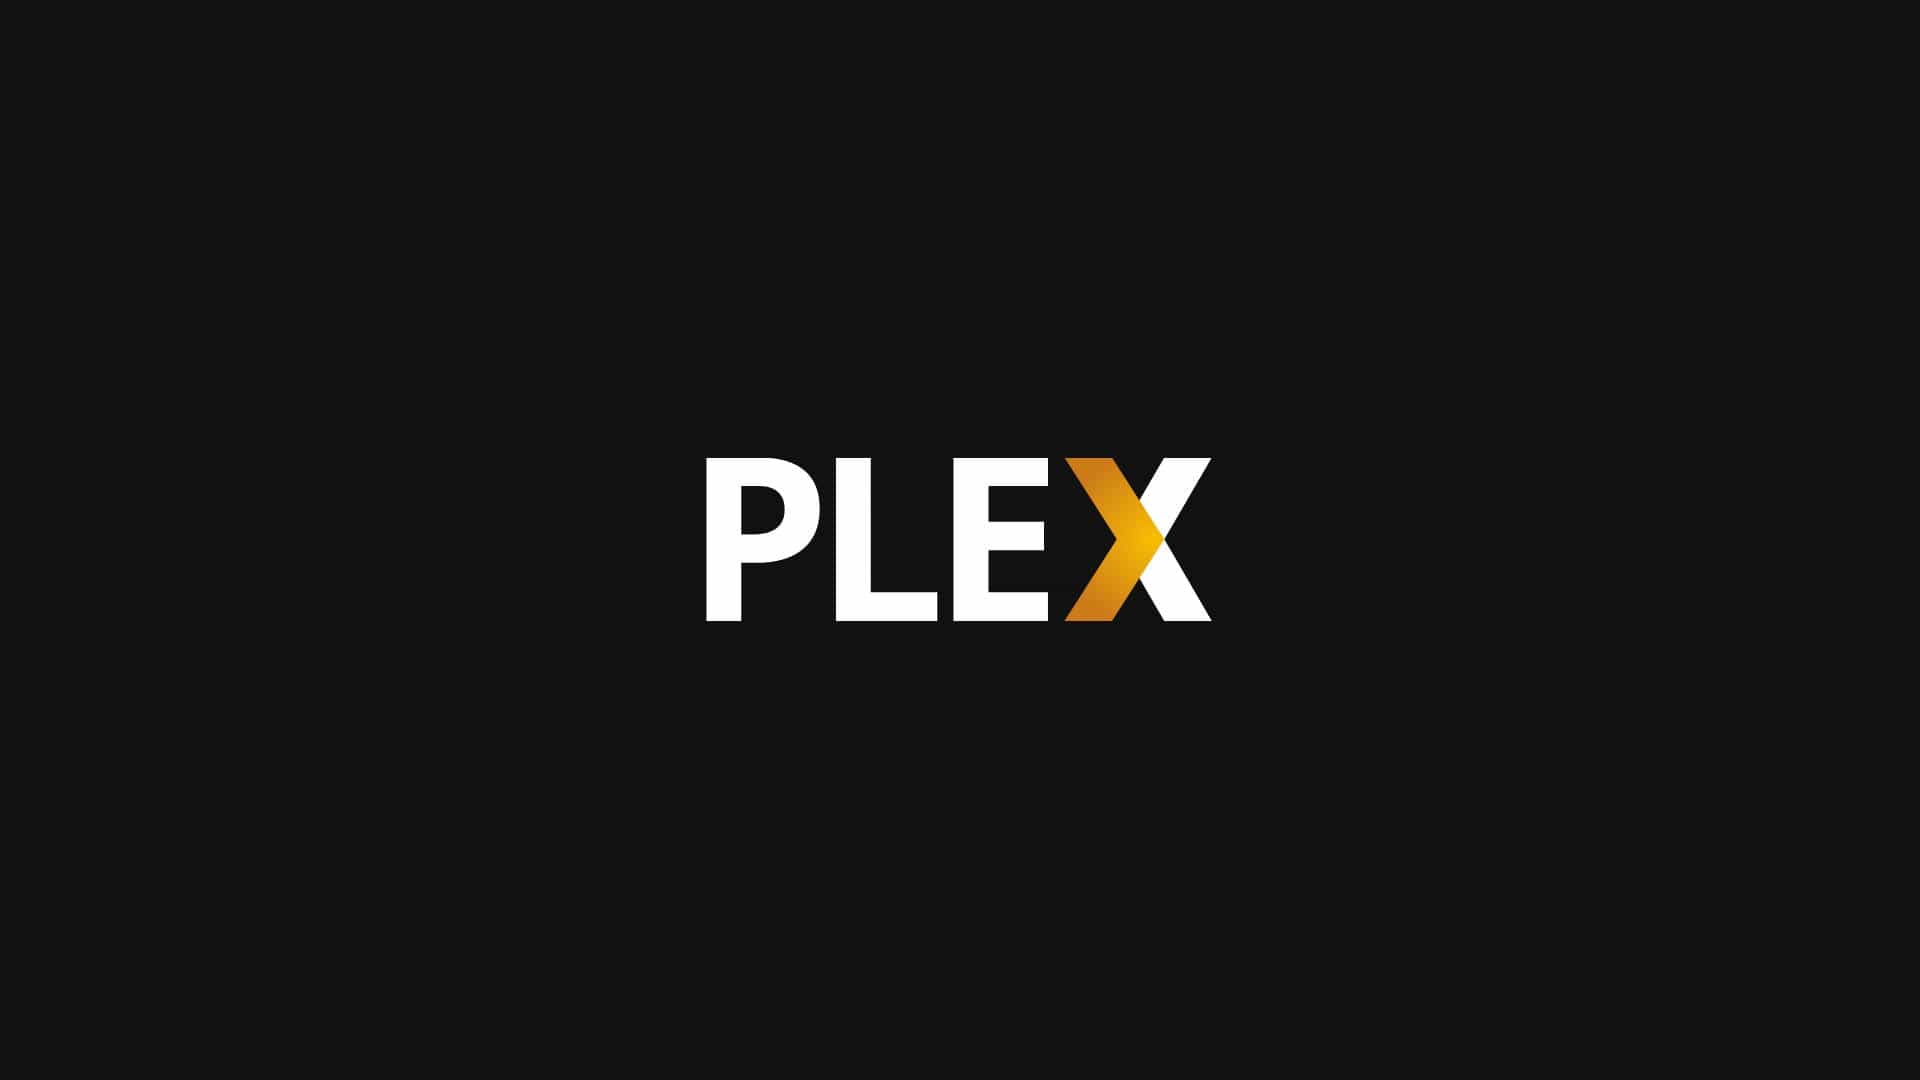 Fire TV Plex App - Plex Splash